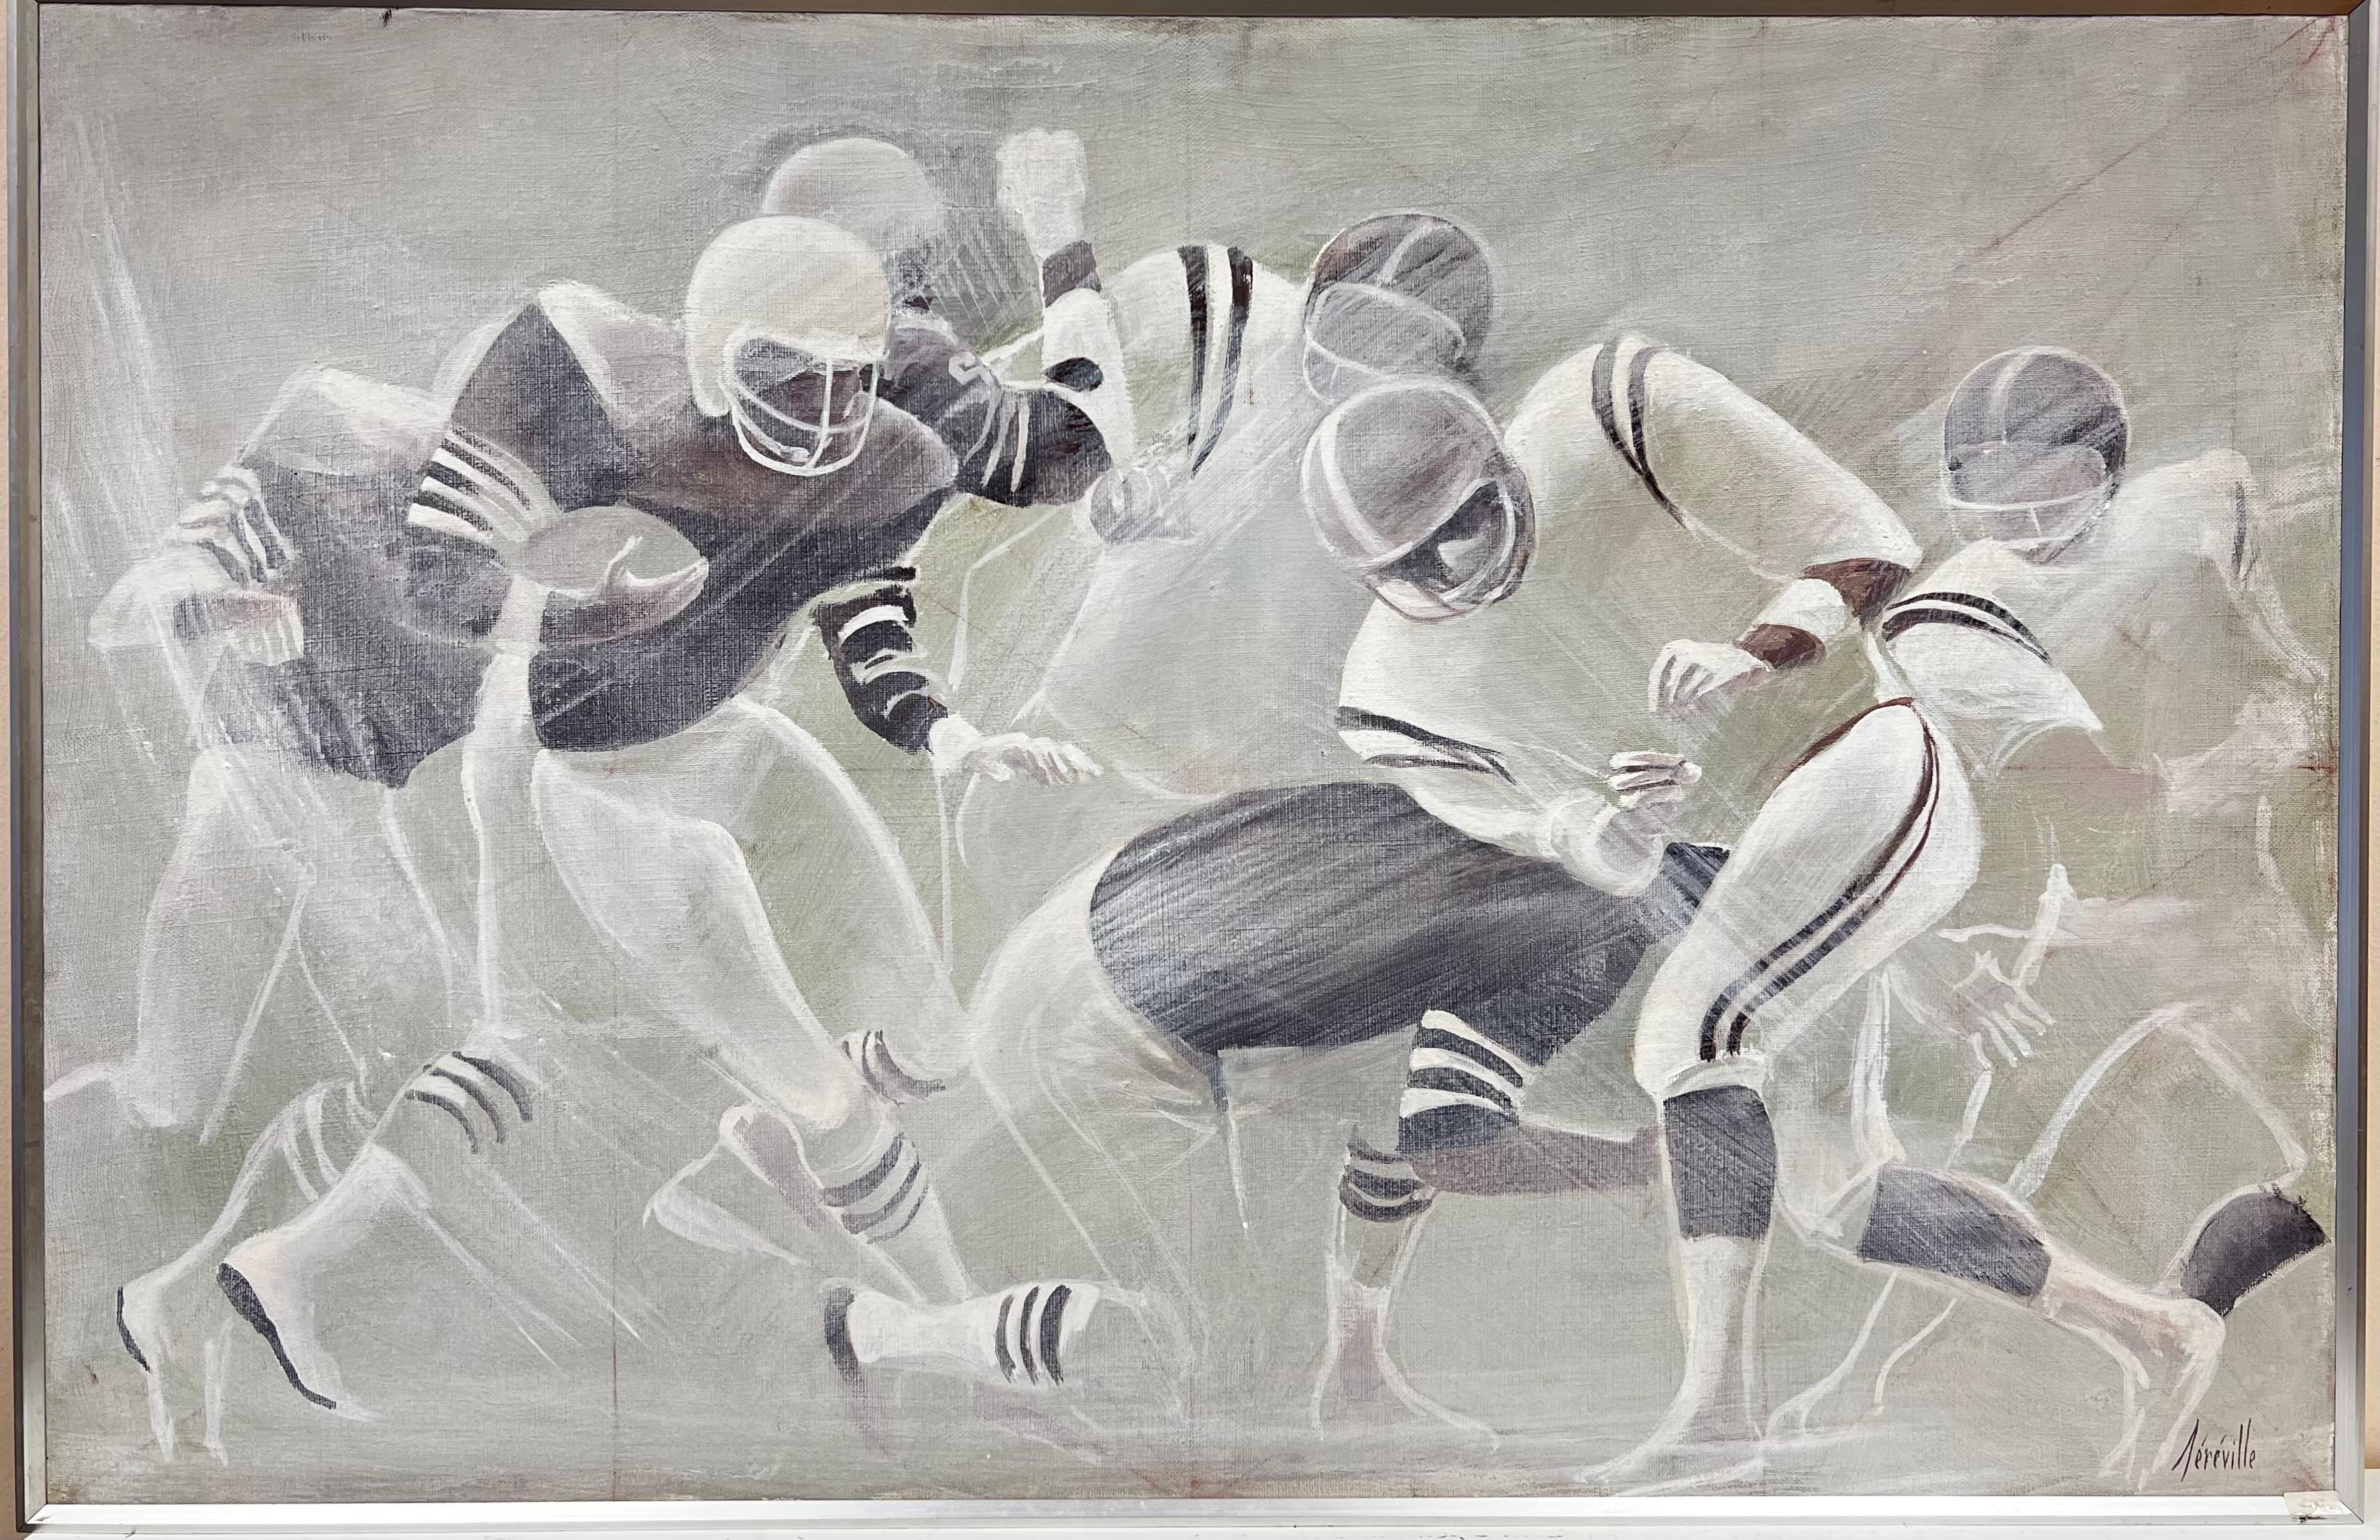 Amerikanisches Fußballspiel, dramatisches Ölgemälde des 20. Jahrhunderts, signiert, 1980er Jahre (Moderne), Painting, von 20th Century French School